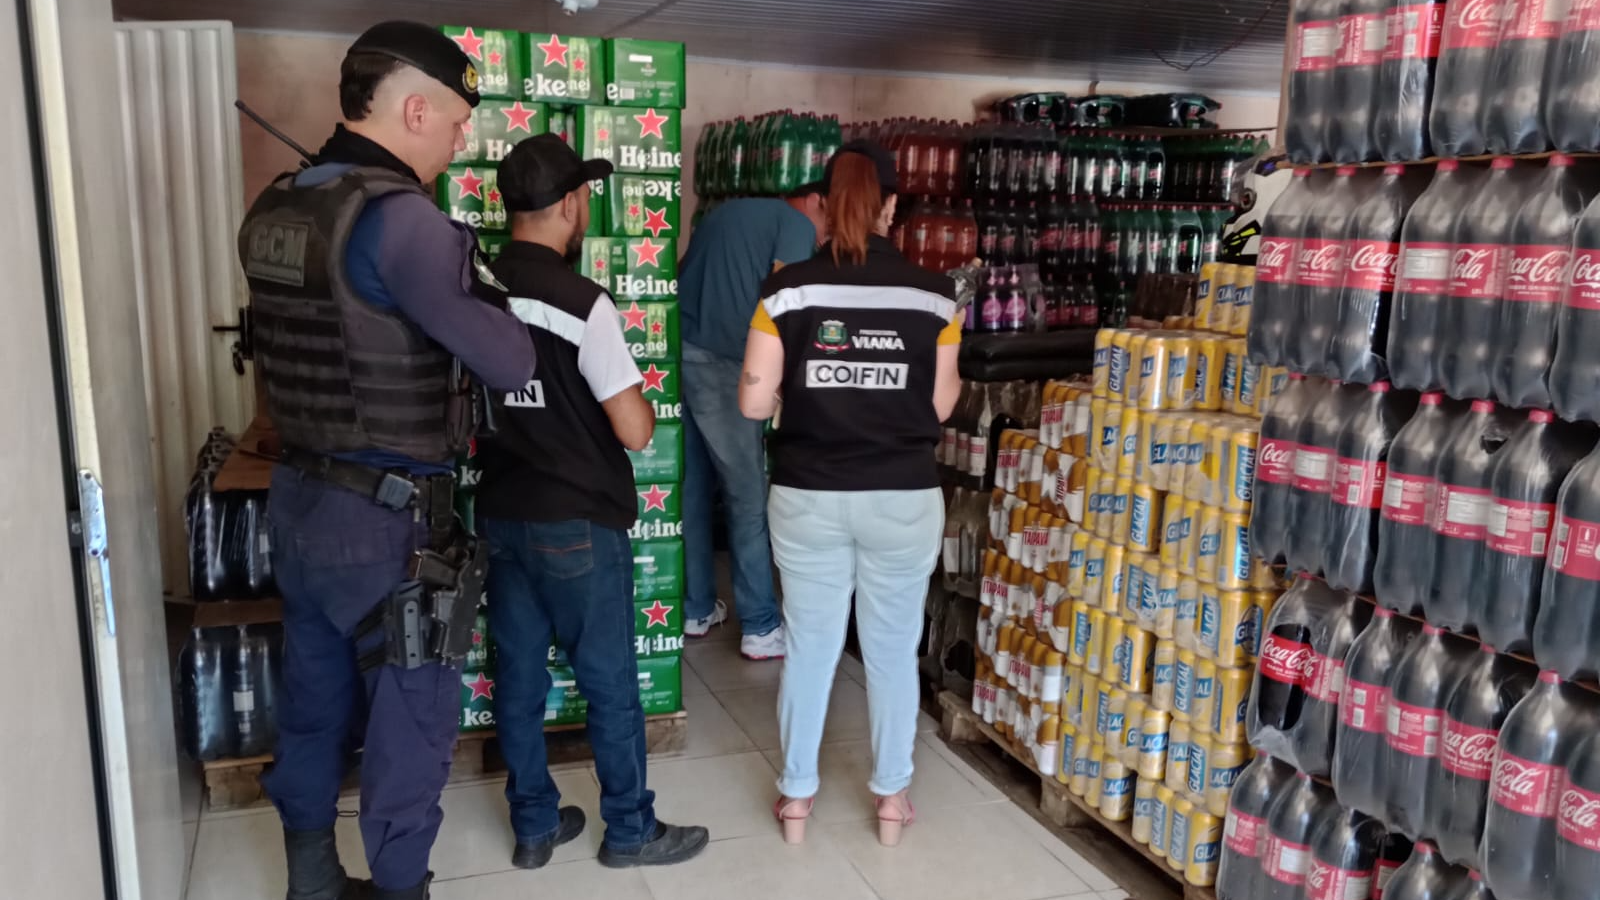 Operação conjunta em Viana apreende 372 garrafas de bebidas adulteradas